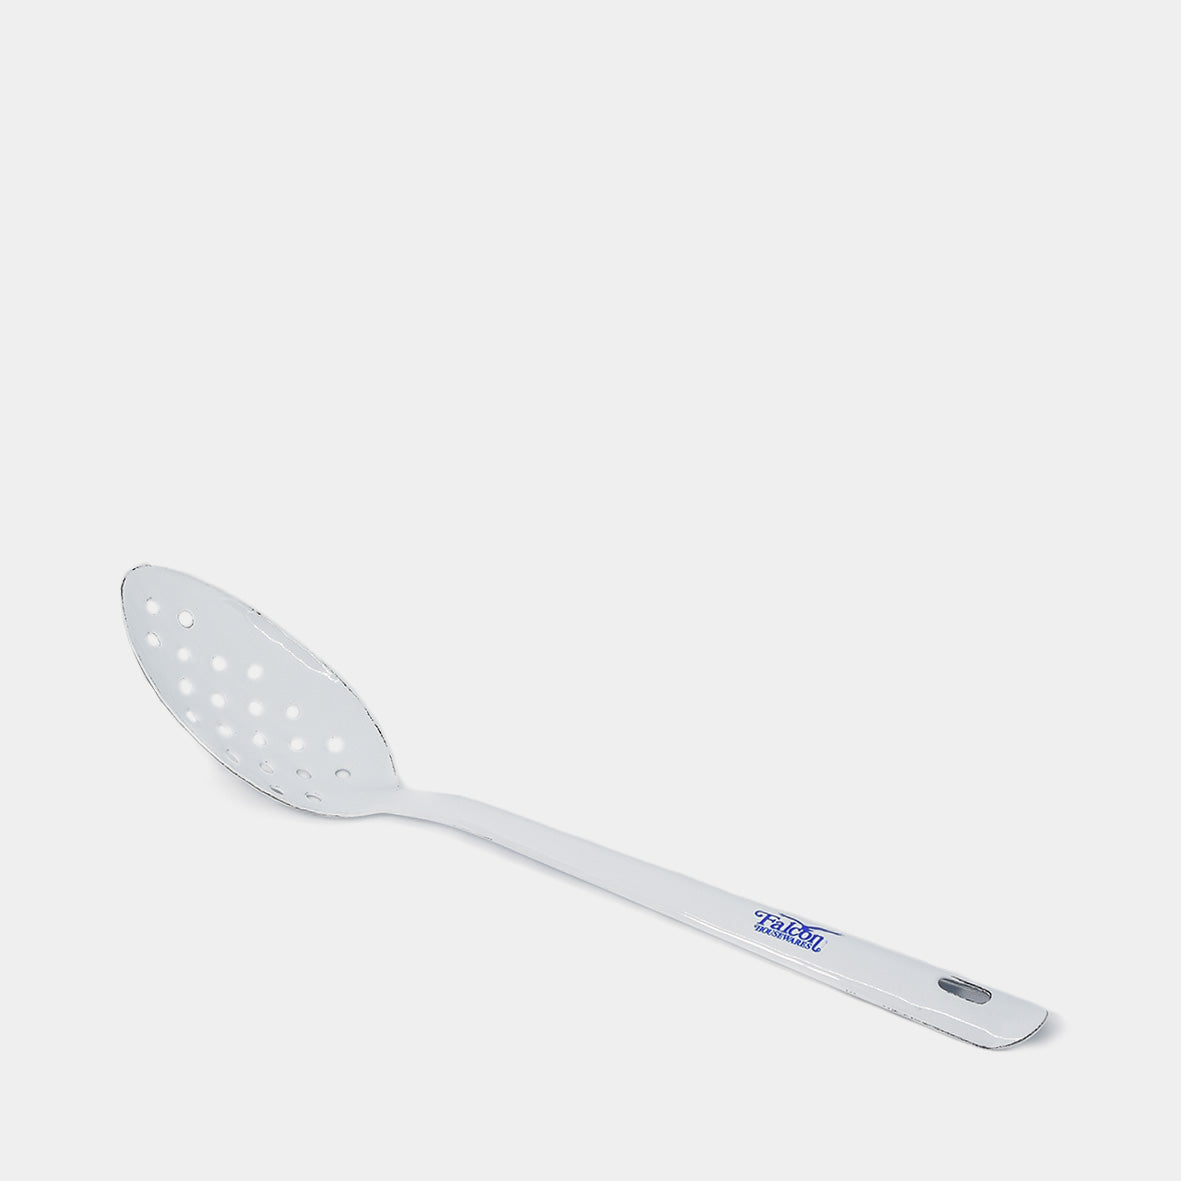 White Enamel Spoon with Holes 30cm